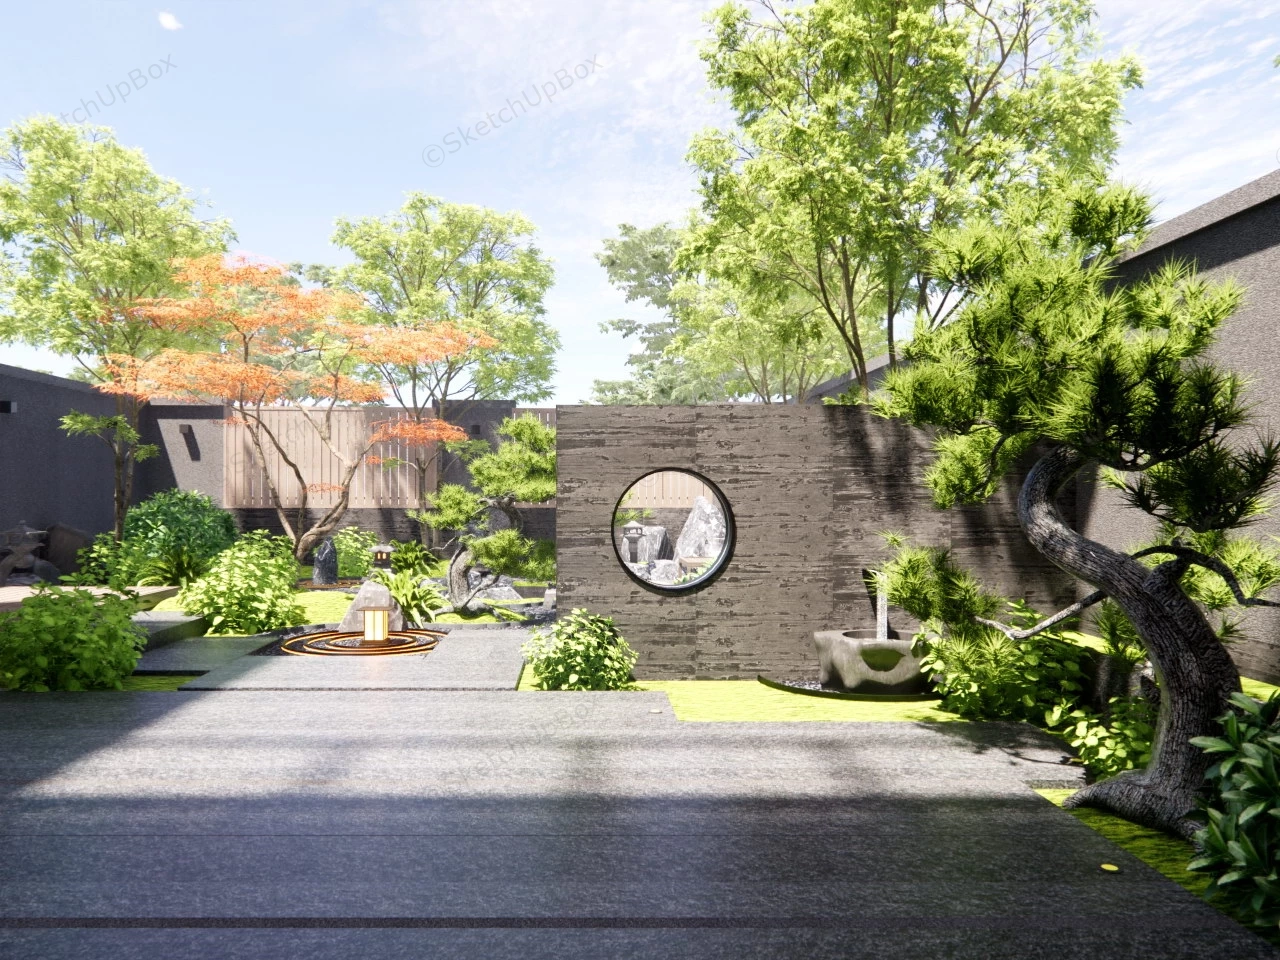 Backyard Japanese Garden Idea sketchup model preview - SketchupBox